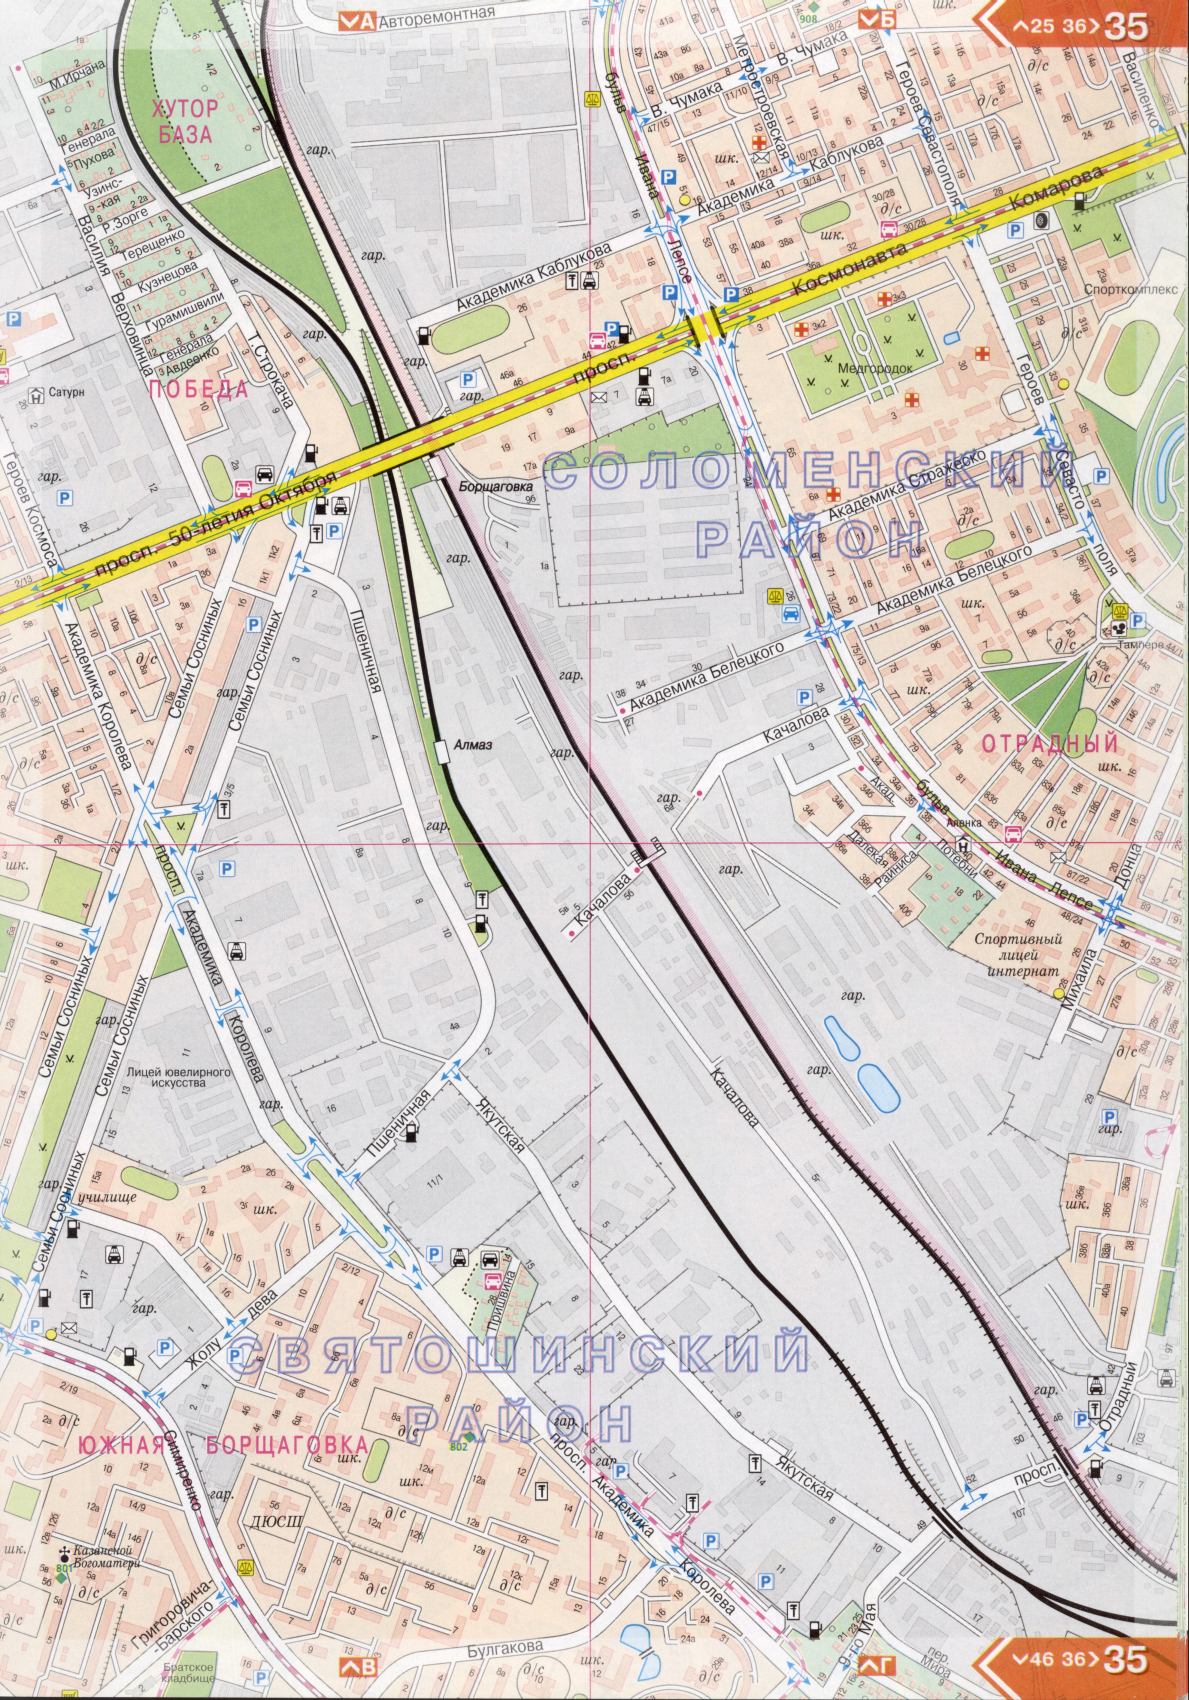 Kiew Karte Details 1cm = 150m für 45 Blatt. Karte von Kiew aus dem Atlas von Autobahnen. Laden Sie eine detaillierte Karte, B3 - Straße Komarova, Kiew